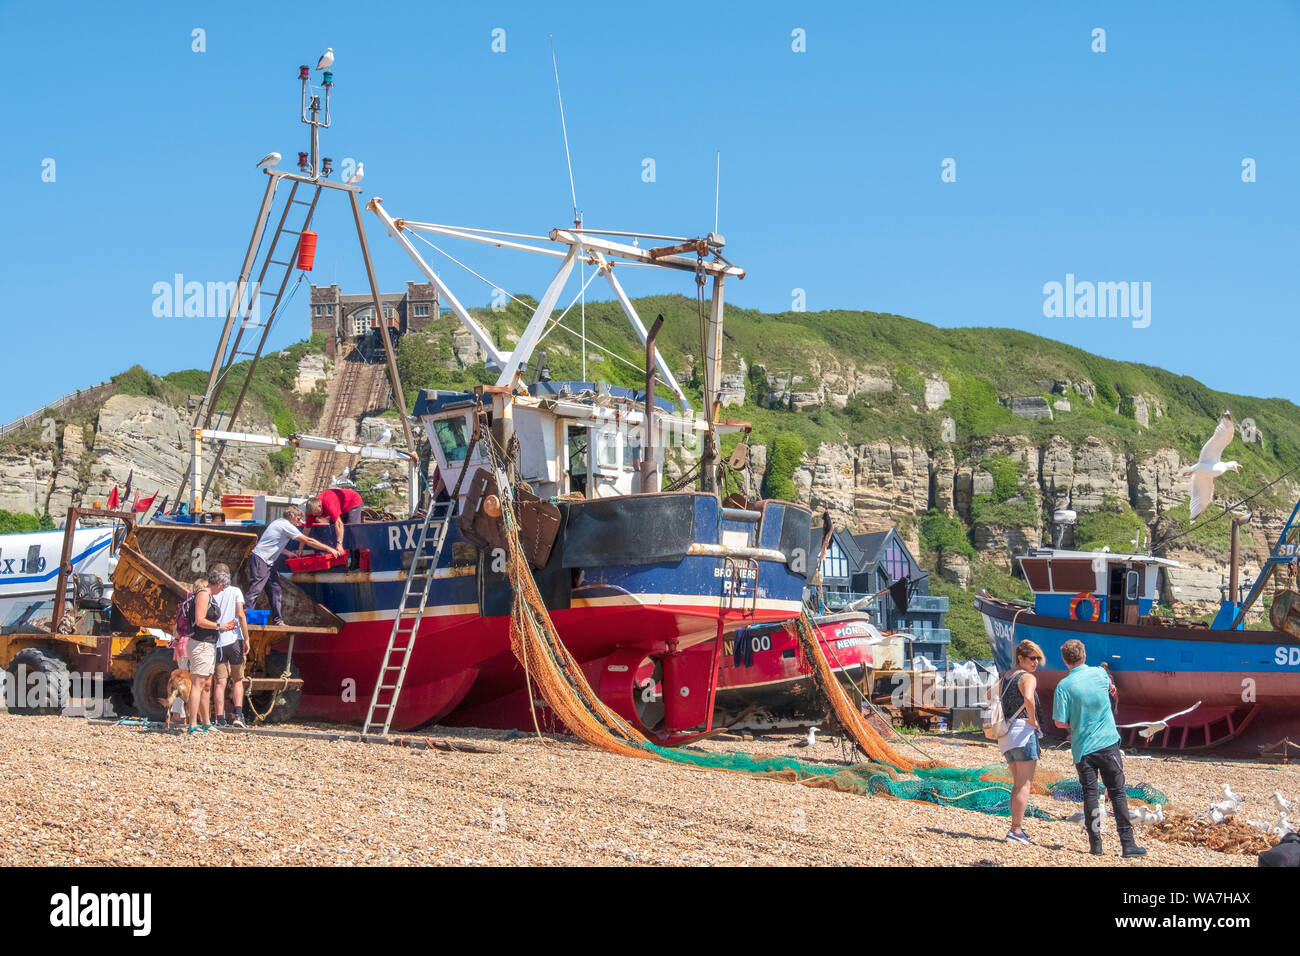 Hastings Fishing Trawler landen Fang von Fischen am Old Town Stade Fishing Boat Beach, East Sussex, Südküste, England, Vereinigtes Königreich, Fischerboote Stockfoto